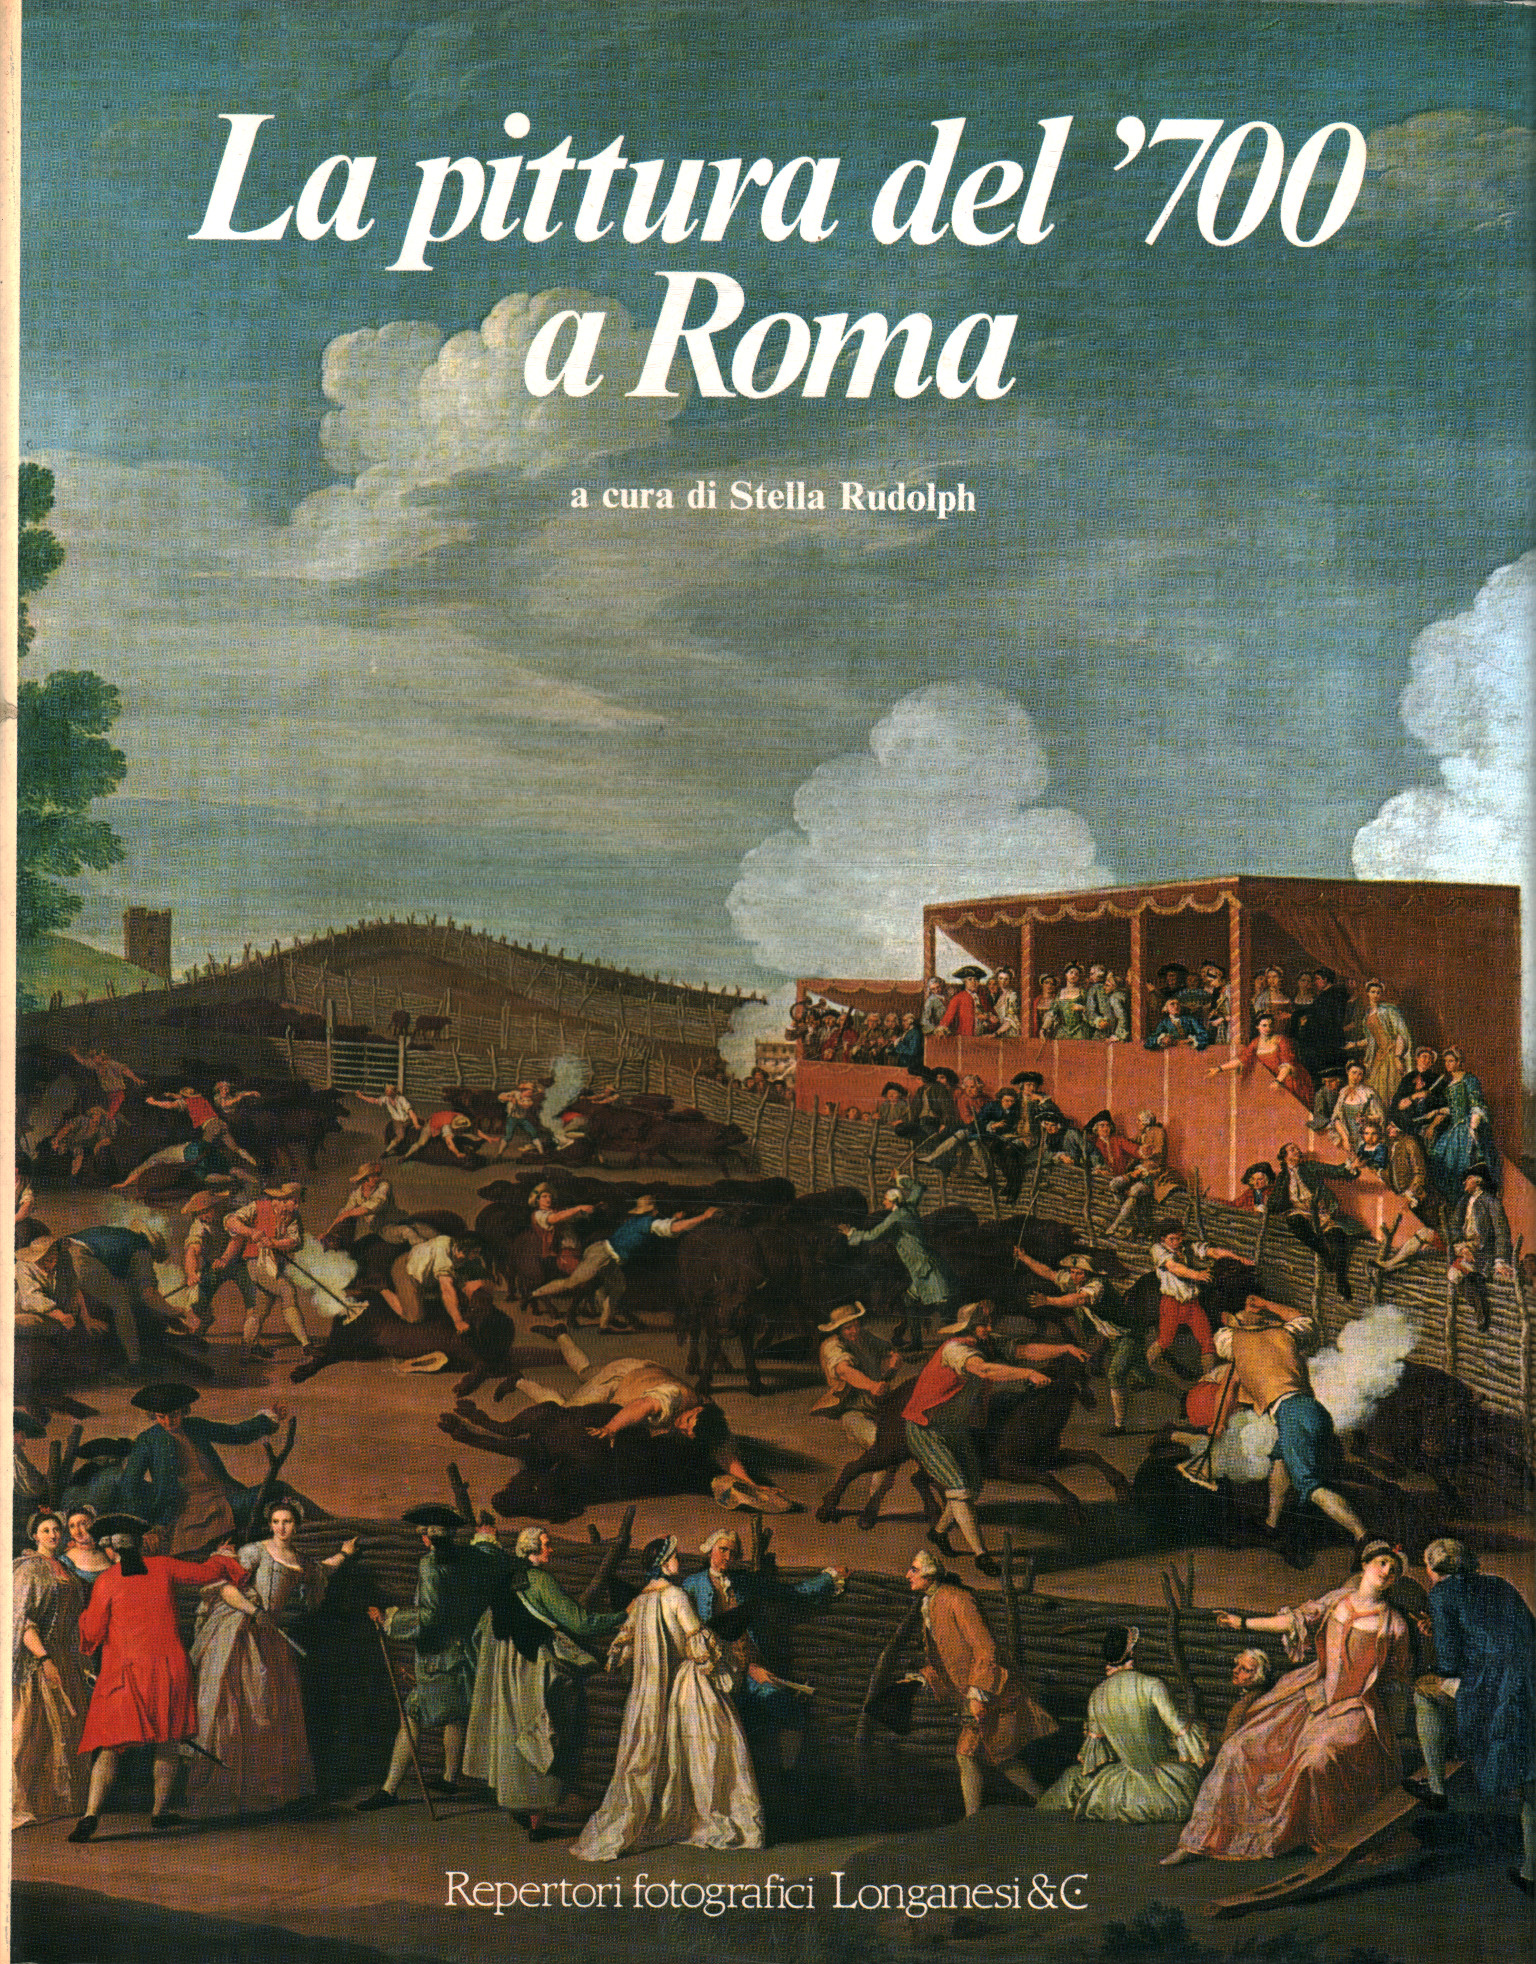 Das Gemälde des 700 in Rom